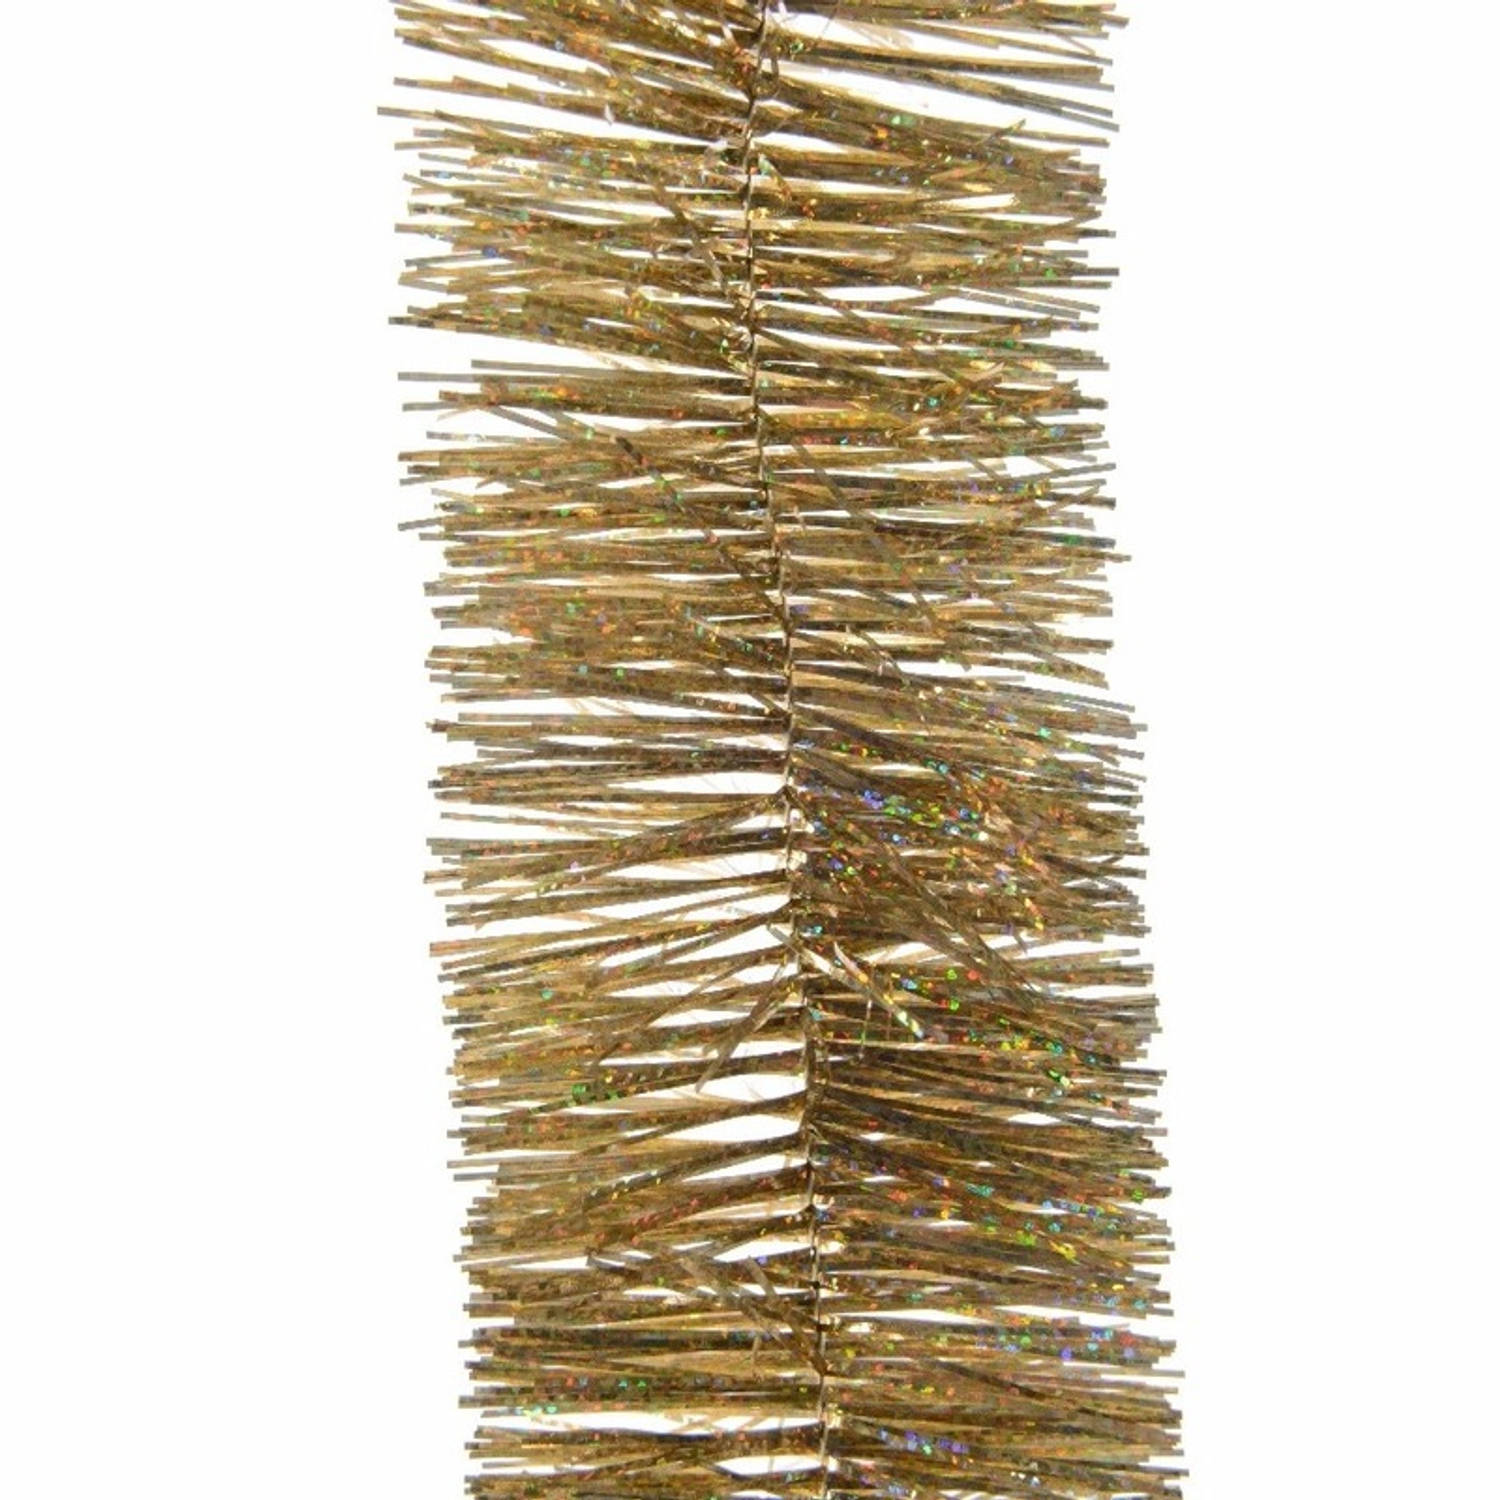 3x Gouden kerstboomslinger 270 cm - Kerstslingers